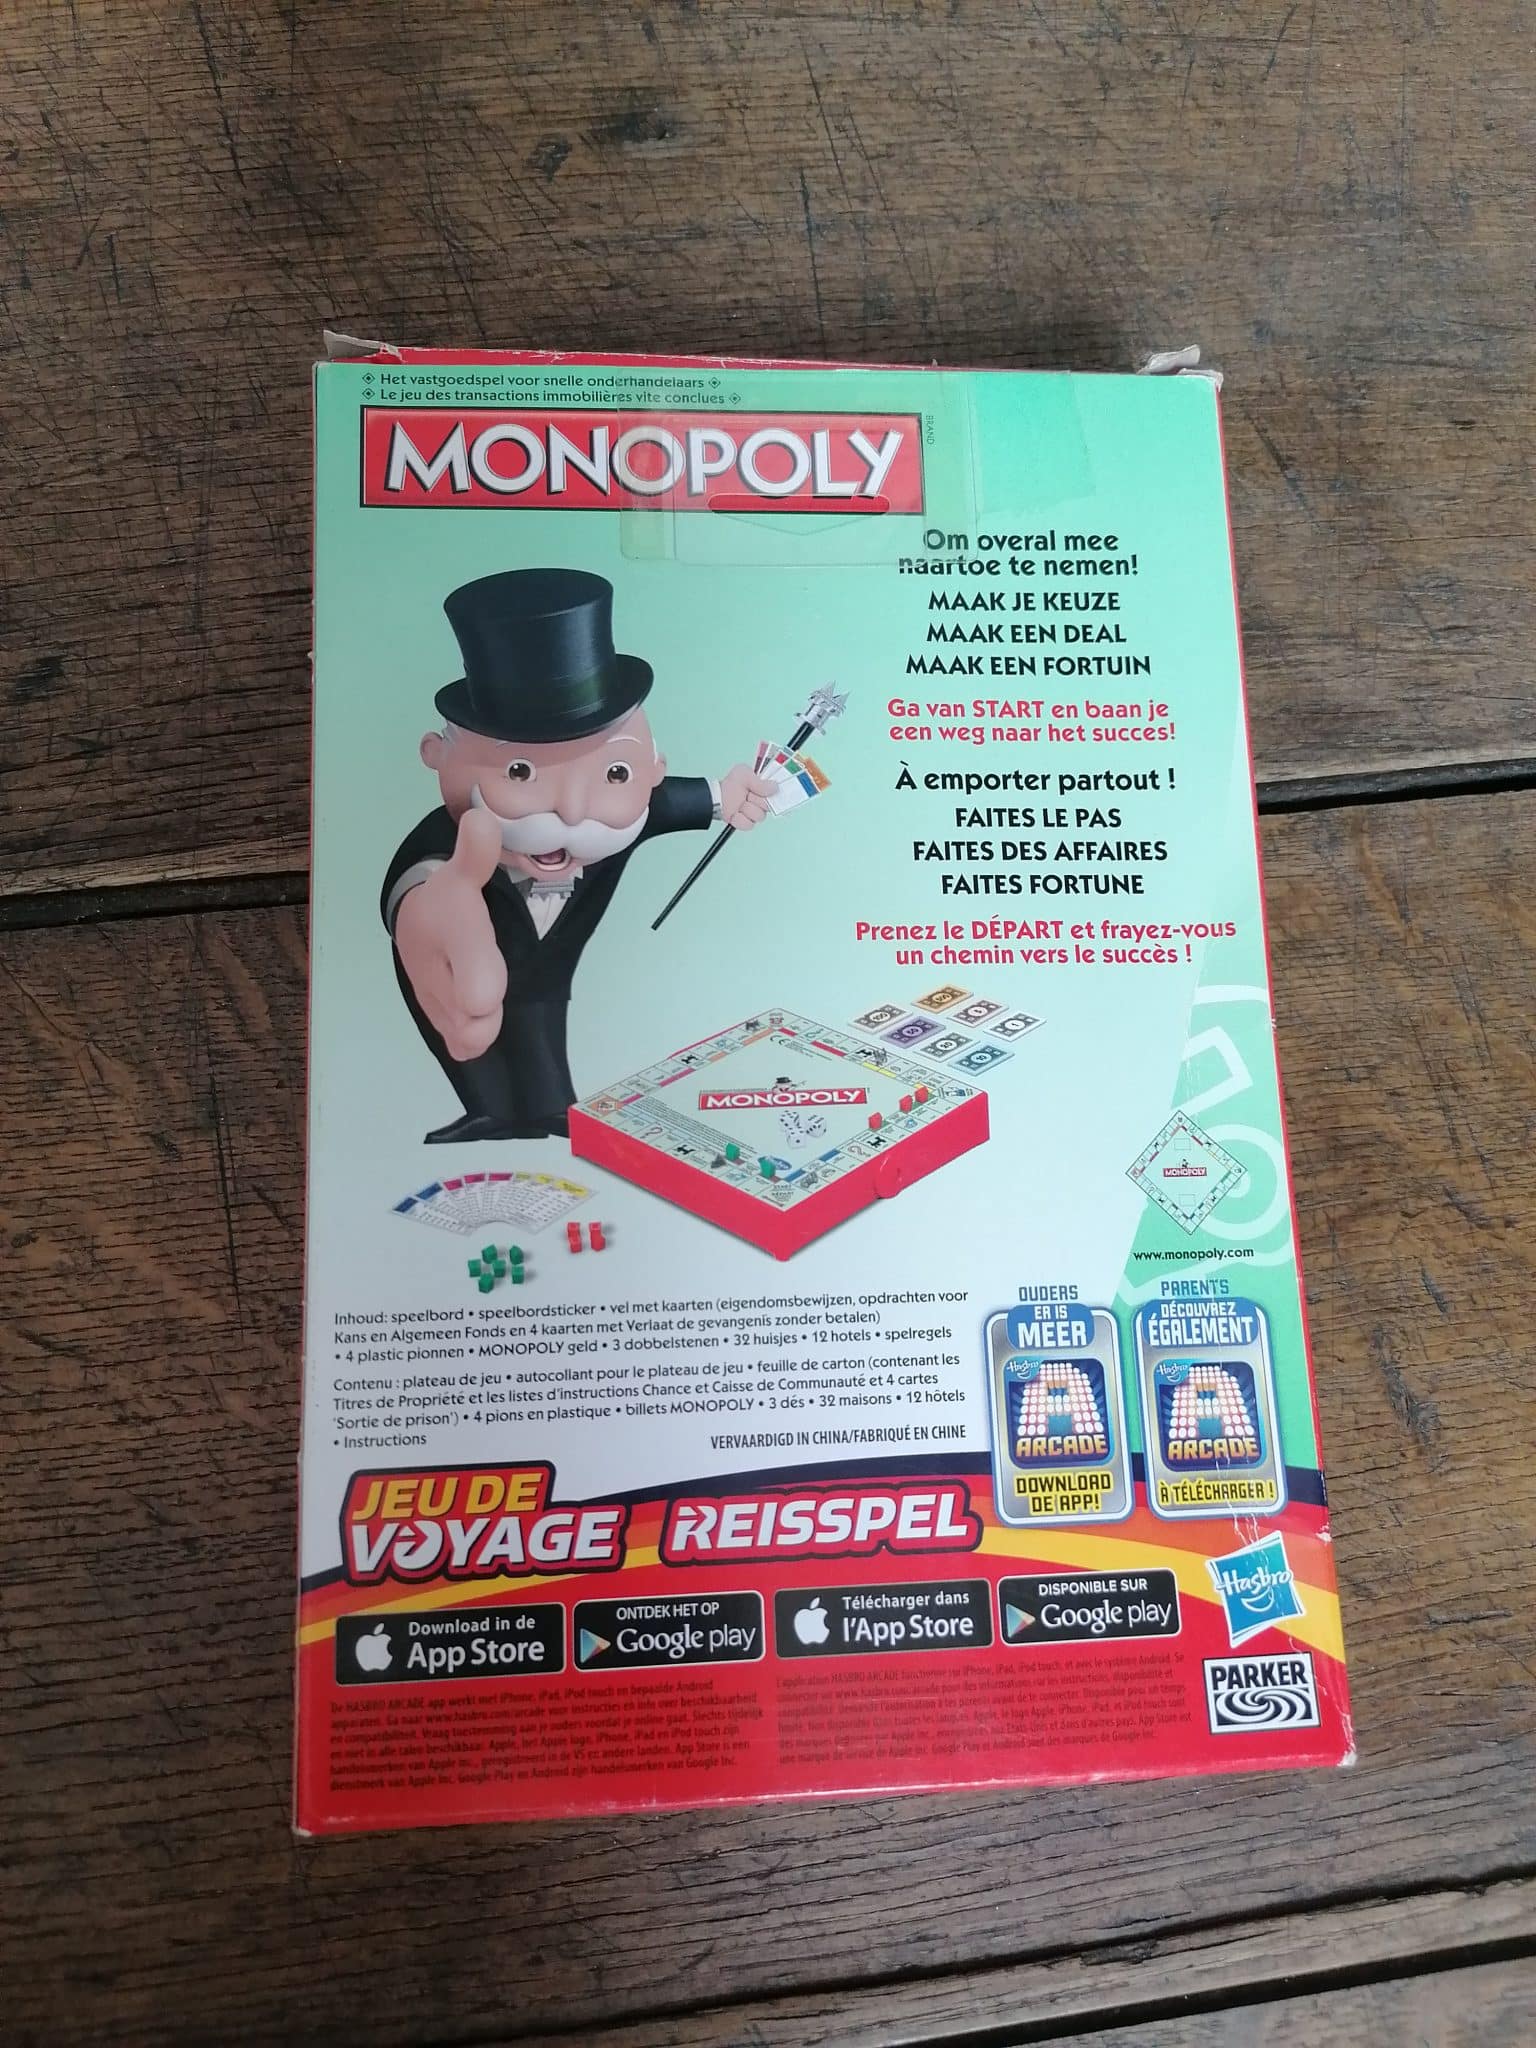 Monopoly Jeu de voyage - Grenier d'enfance